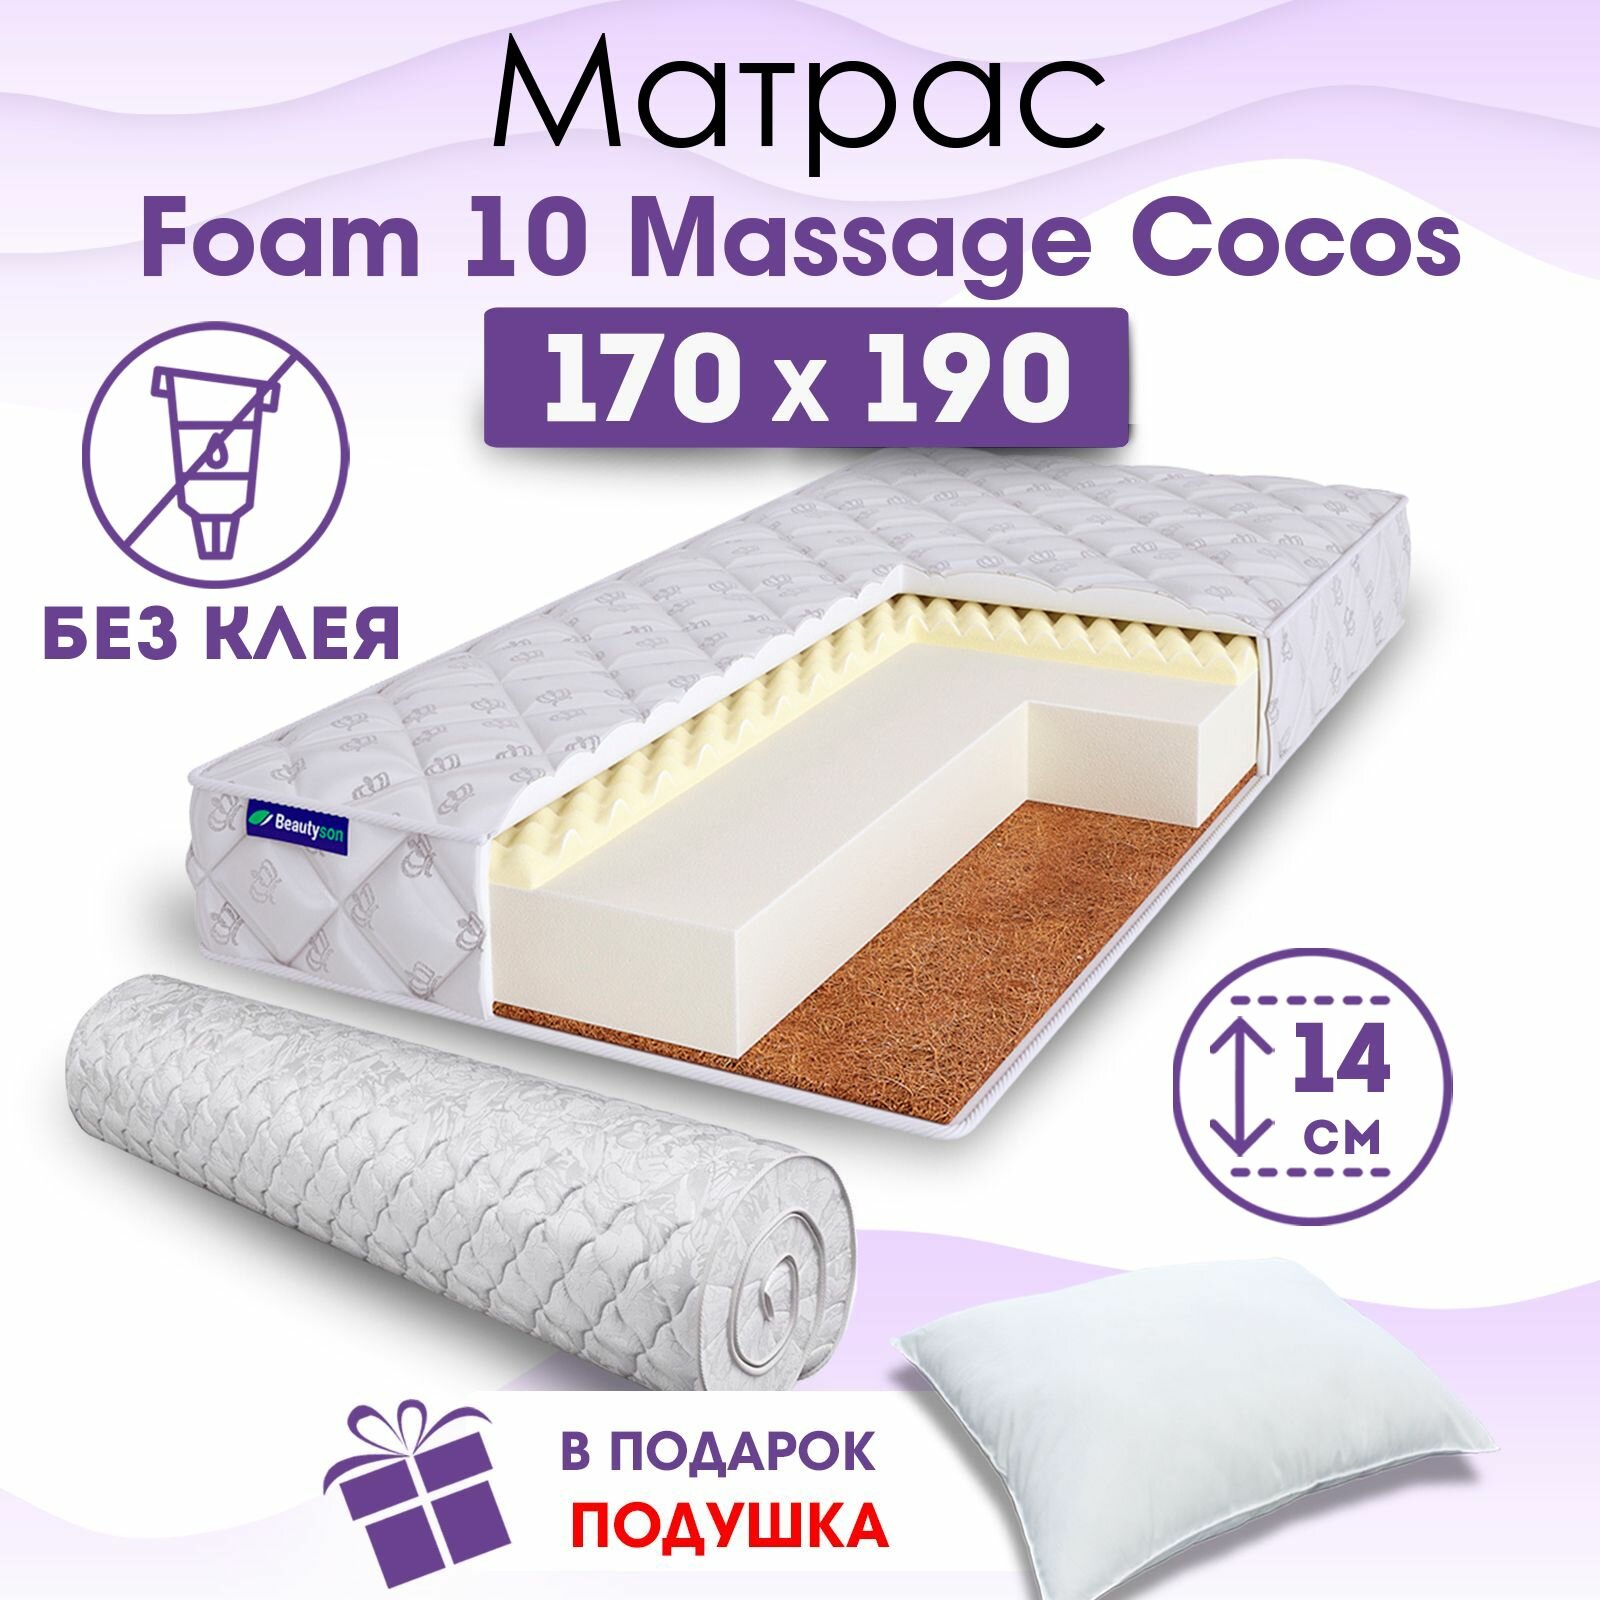 Ортопедический матрас Beautyson Foam 10 Massage Cocos без клея, 170х190, 14 см, беспружинный, двухспальный, на кровать, для дивана, мягкий, не высокий